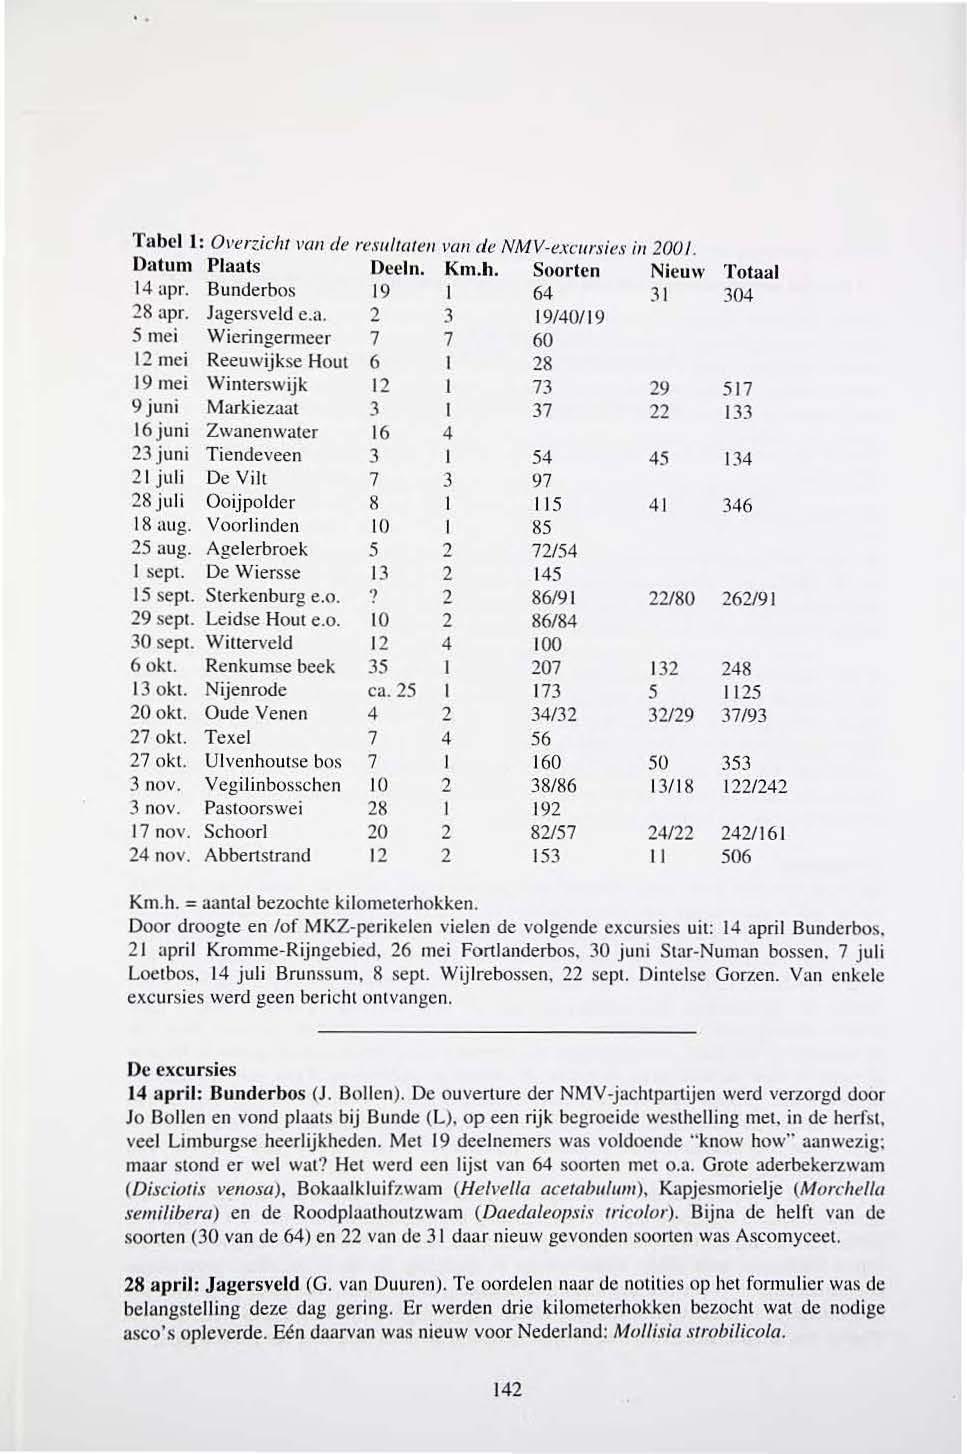 Tabel! : Overzicht van de resultaten van de NMV-excursies in 2001. Datum Plaats Deeln. Km.h. Soorten Nieuw Totaal 14 apr. Bunderbos 19 I 64 31 304 28 apr. Jagersveld e.a. 2 3 19/40/19 5 mei